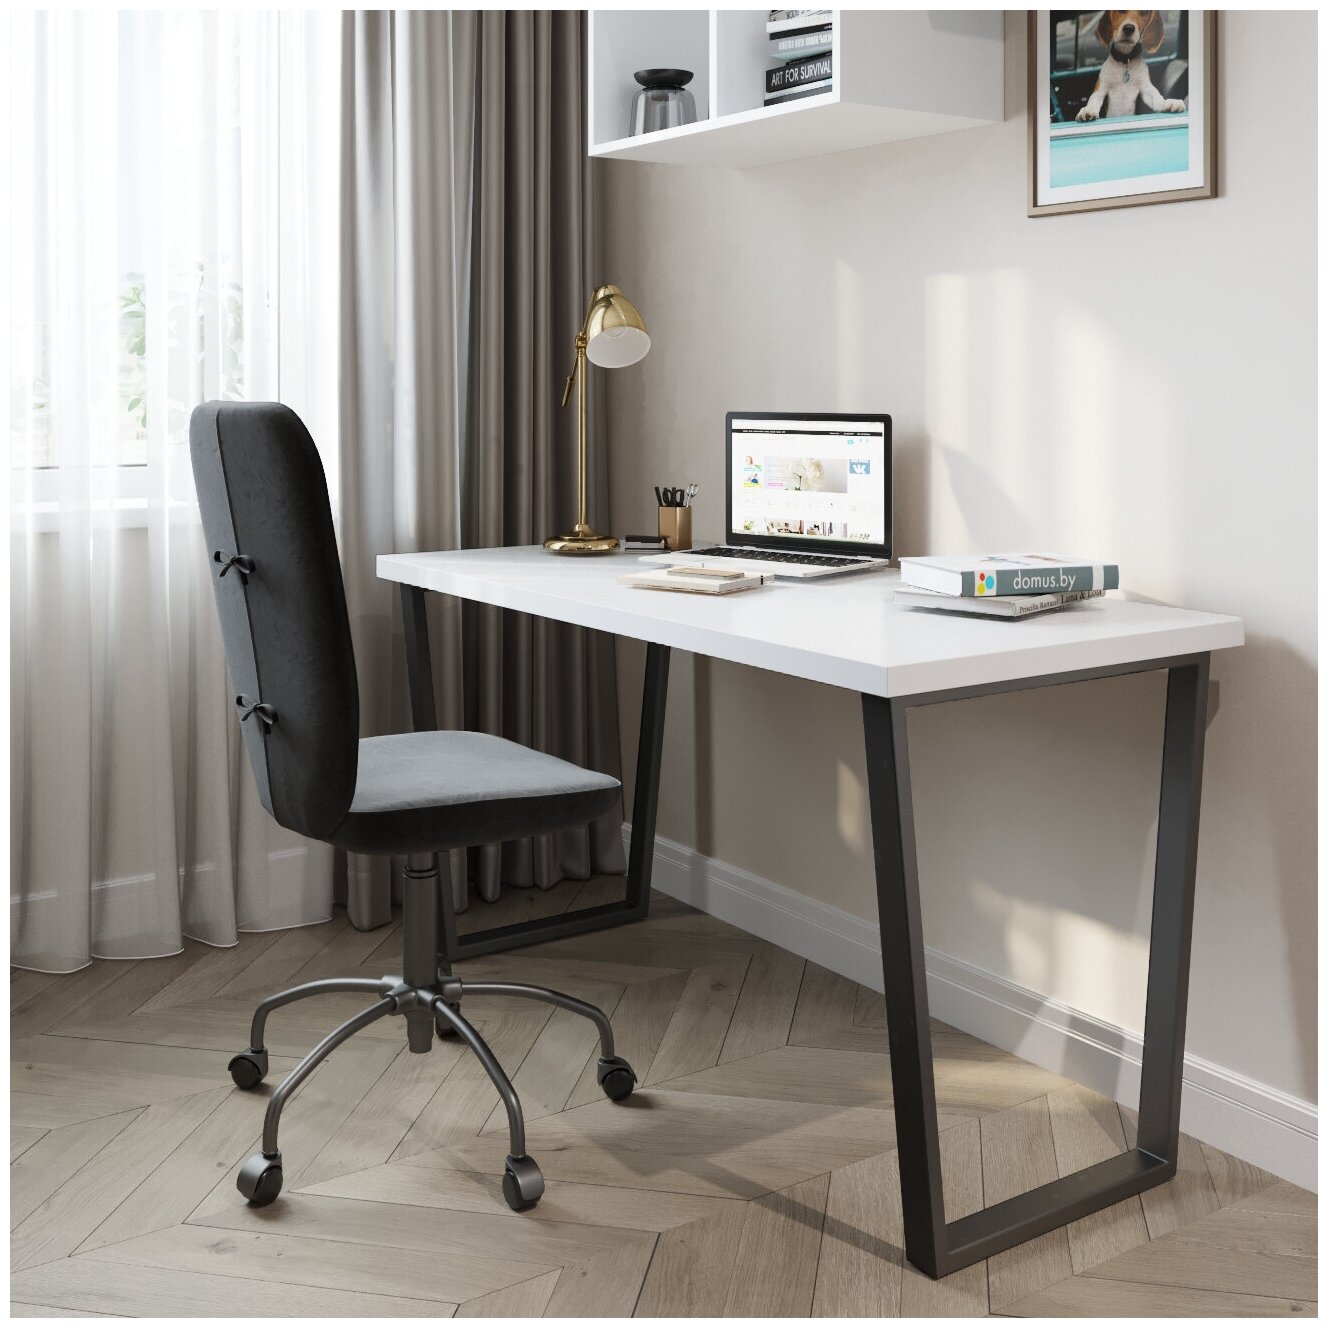 Письменный стол домус СП013 белый/металл черный (120 см)